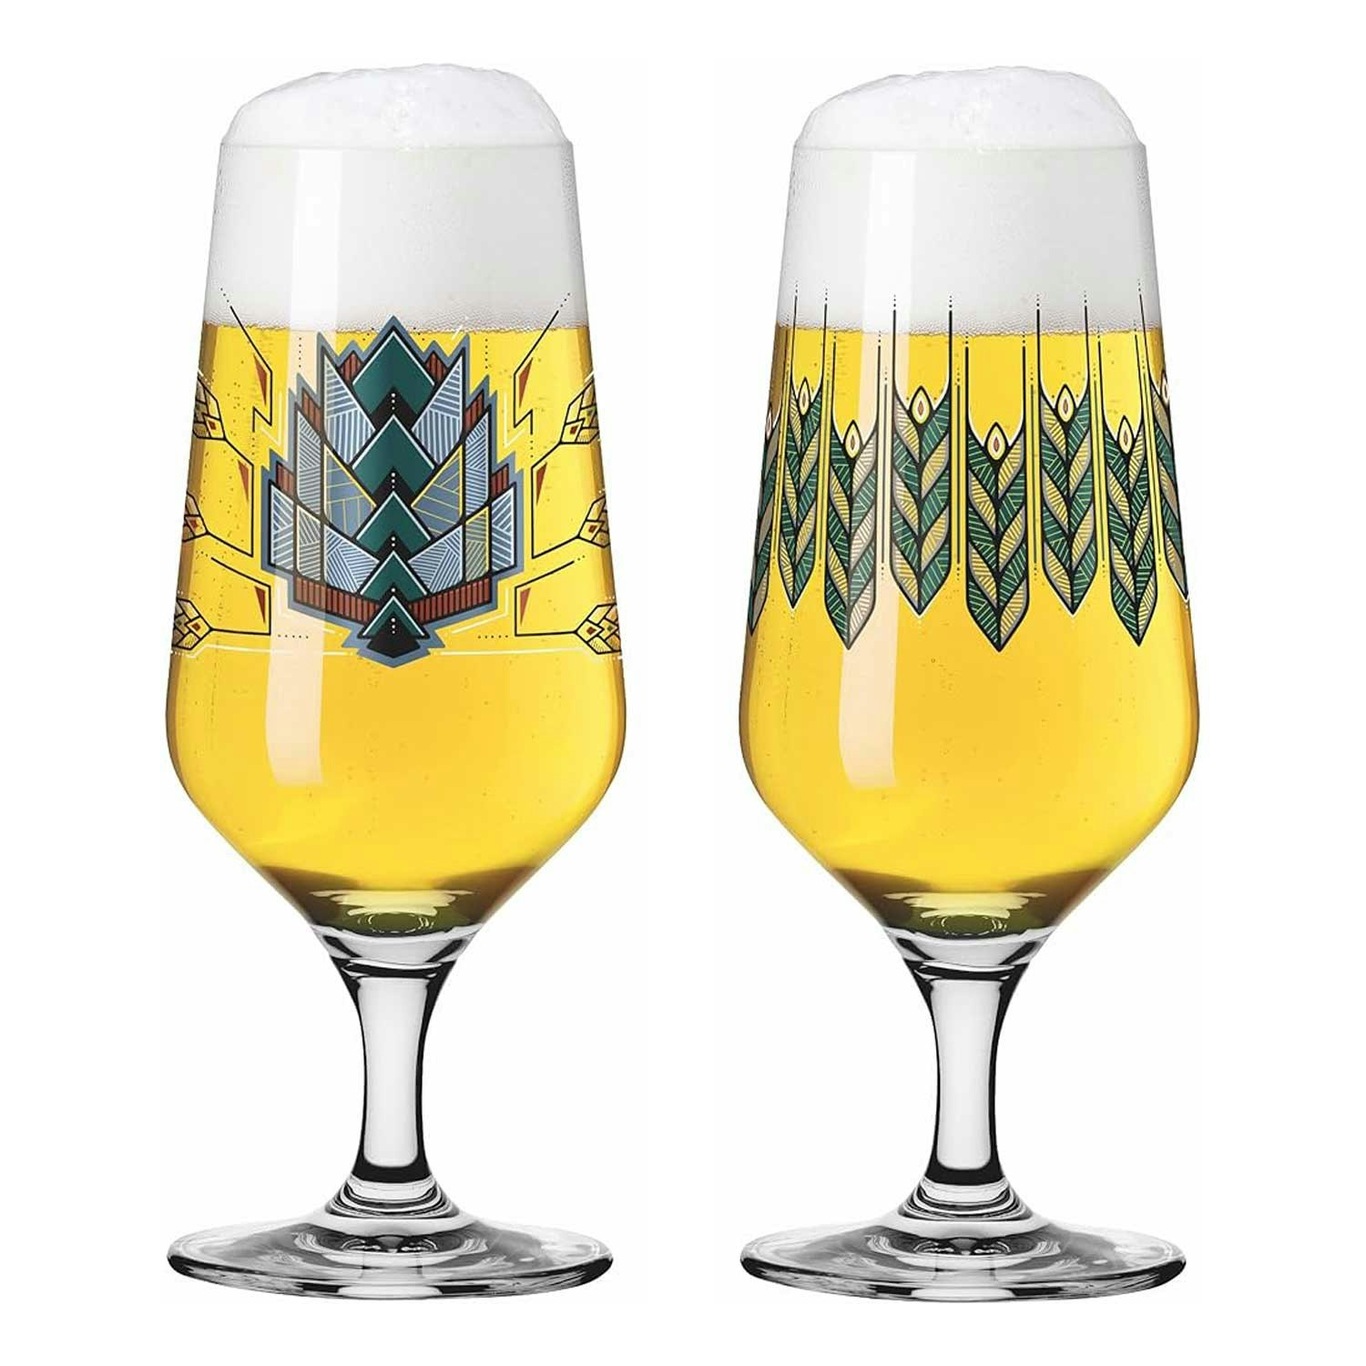 Brauchzeit Beer Glass 37 cl 2-pack, F23